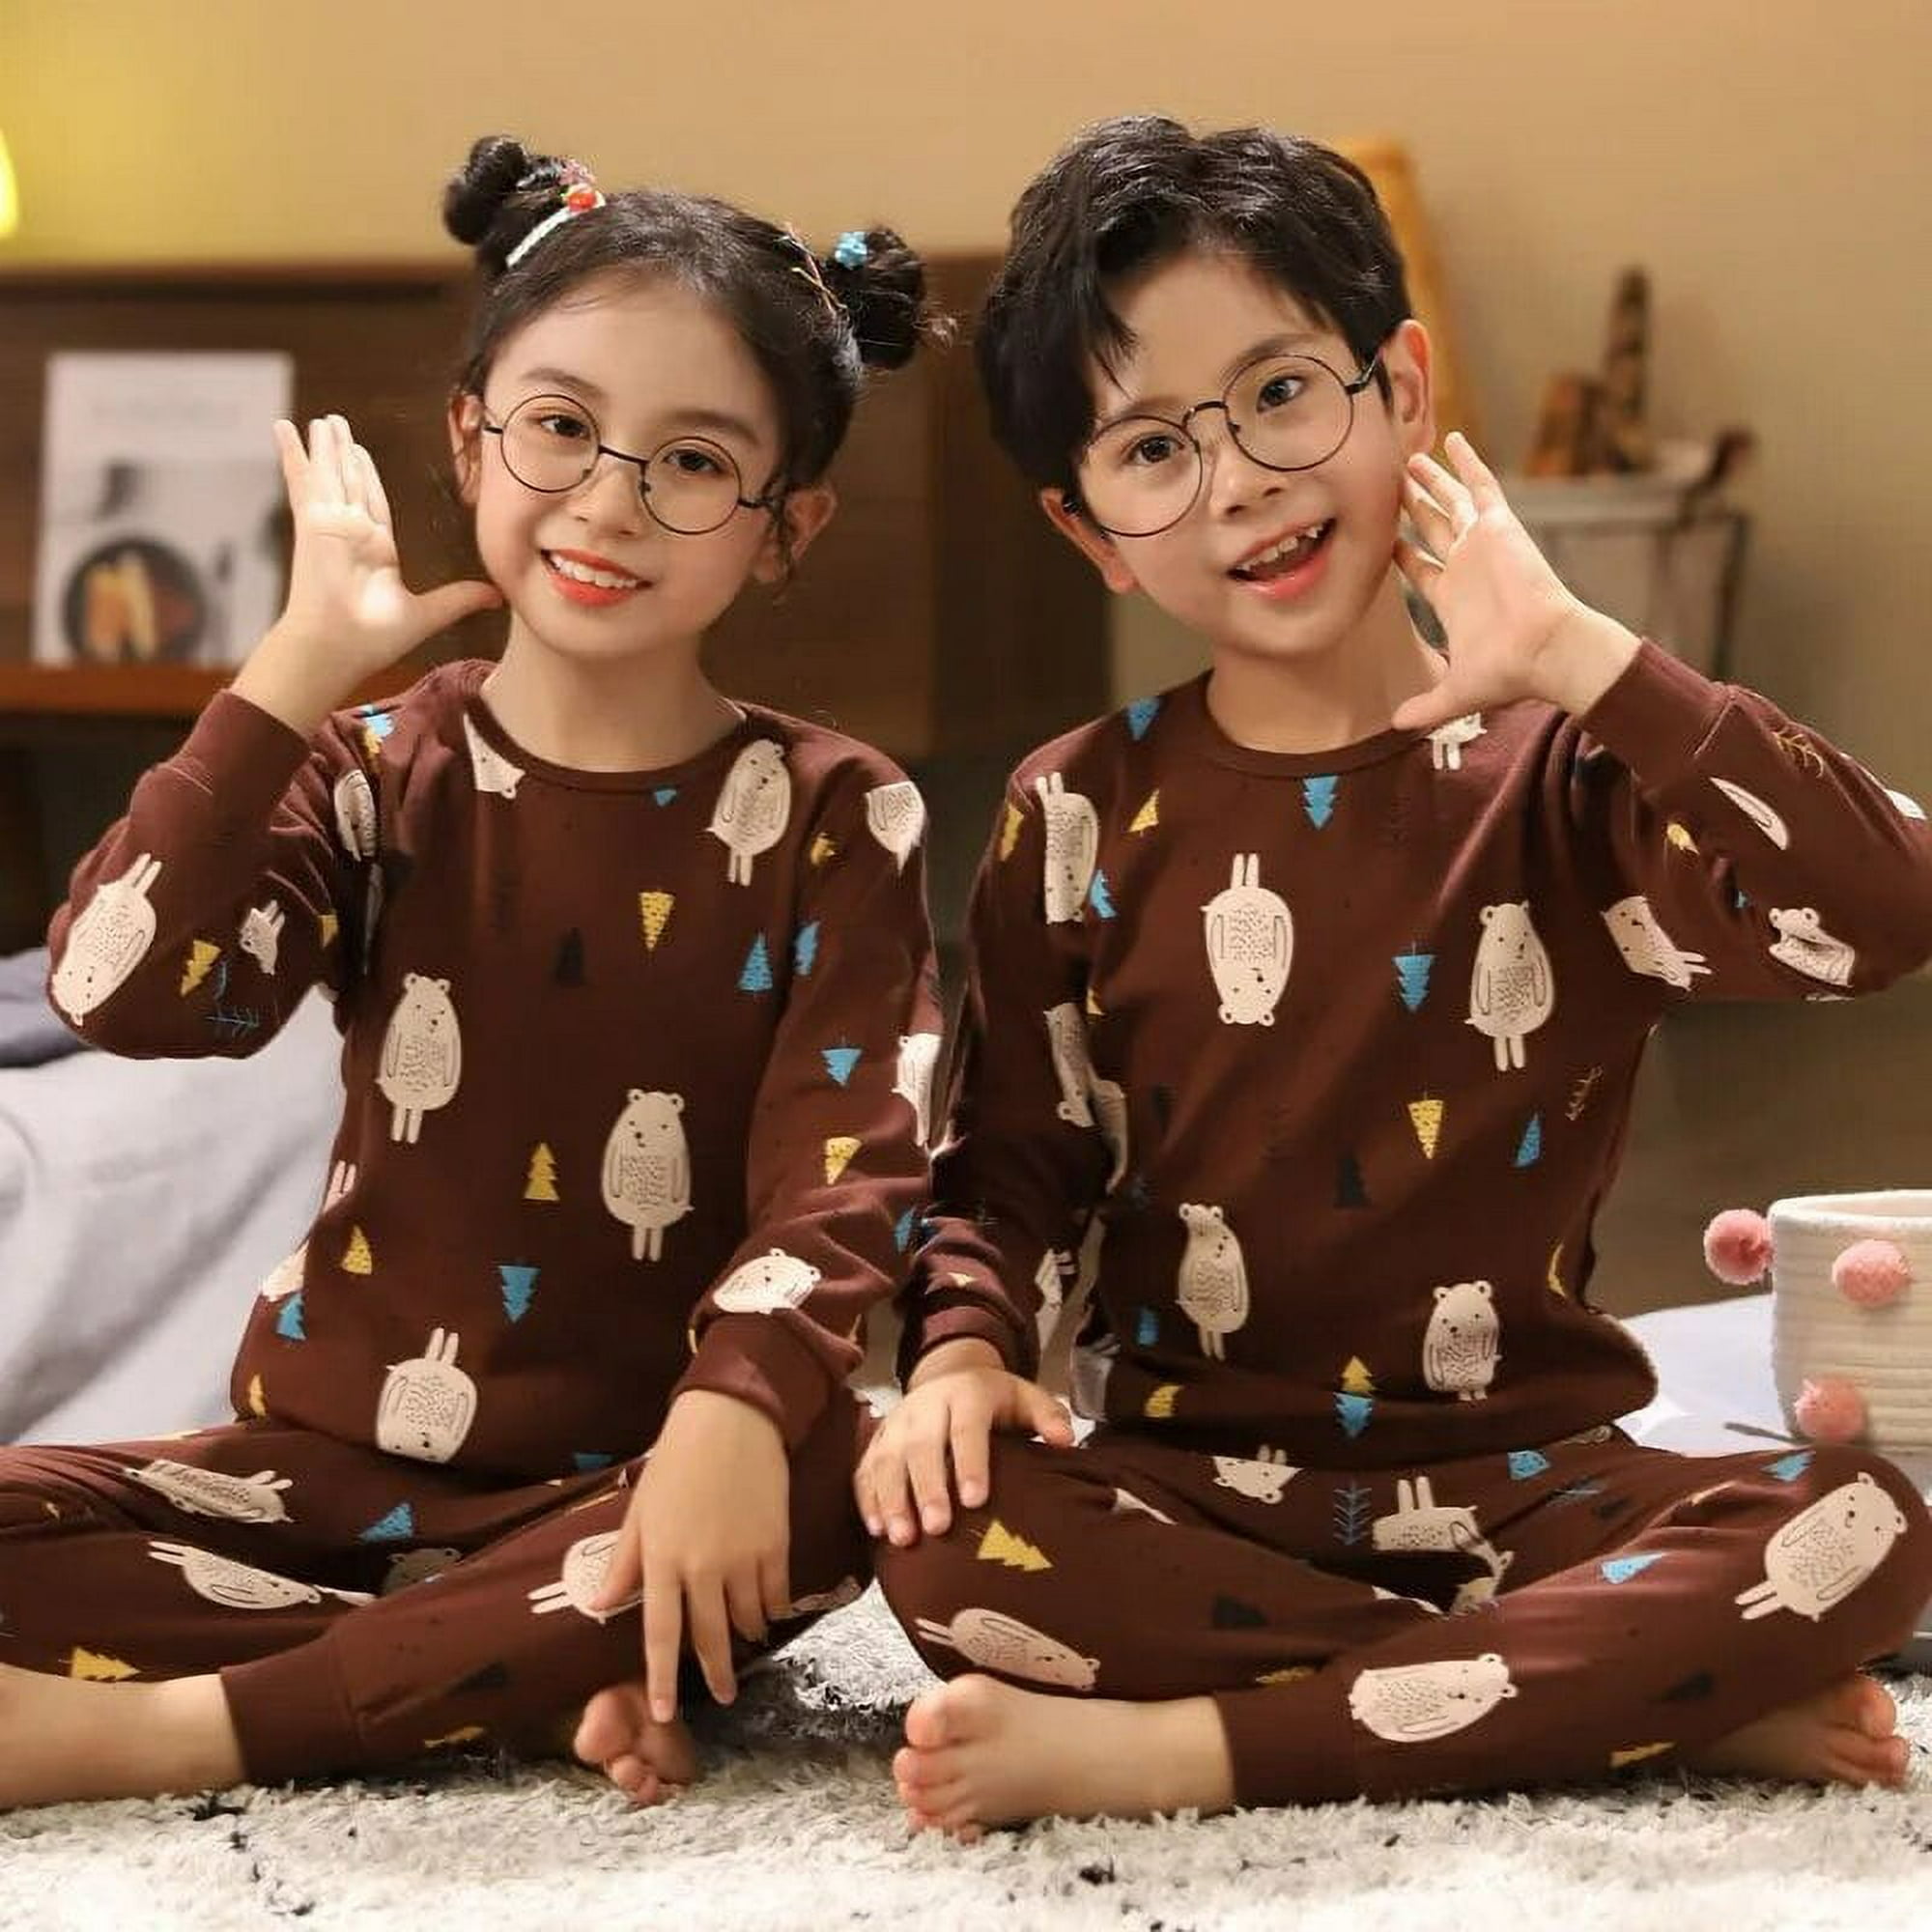 3 4 5 6 7 8 9 10 años niños pijamas set niñas unisex dibujos animados ropa  de manga corta pijama algodón ropa dormir